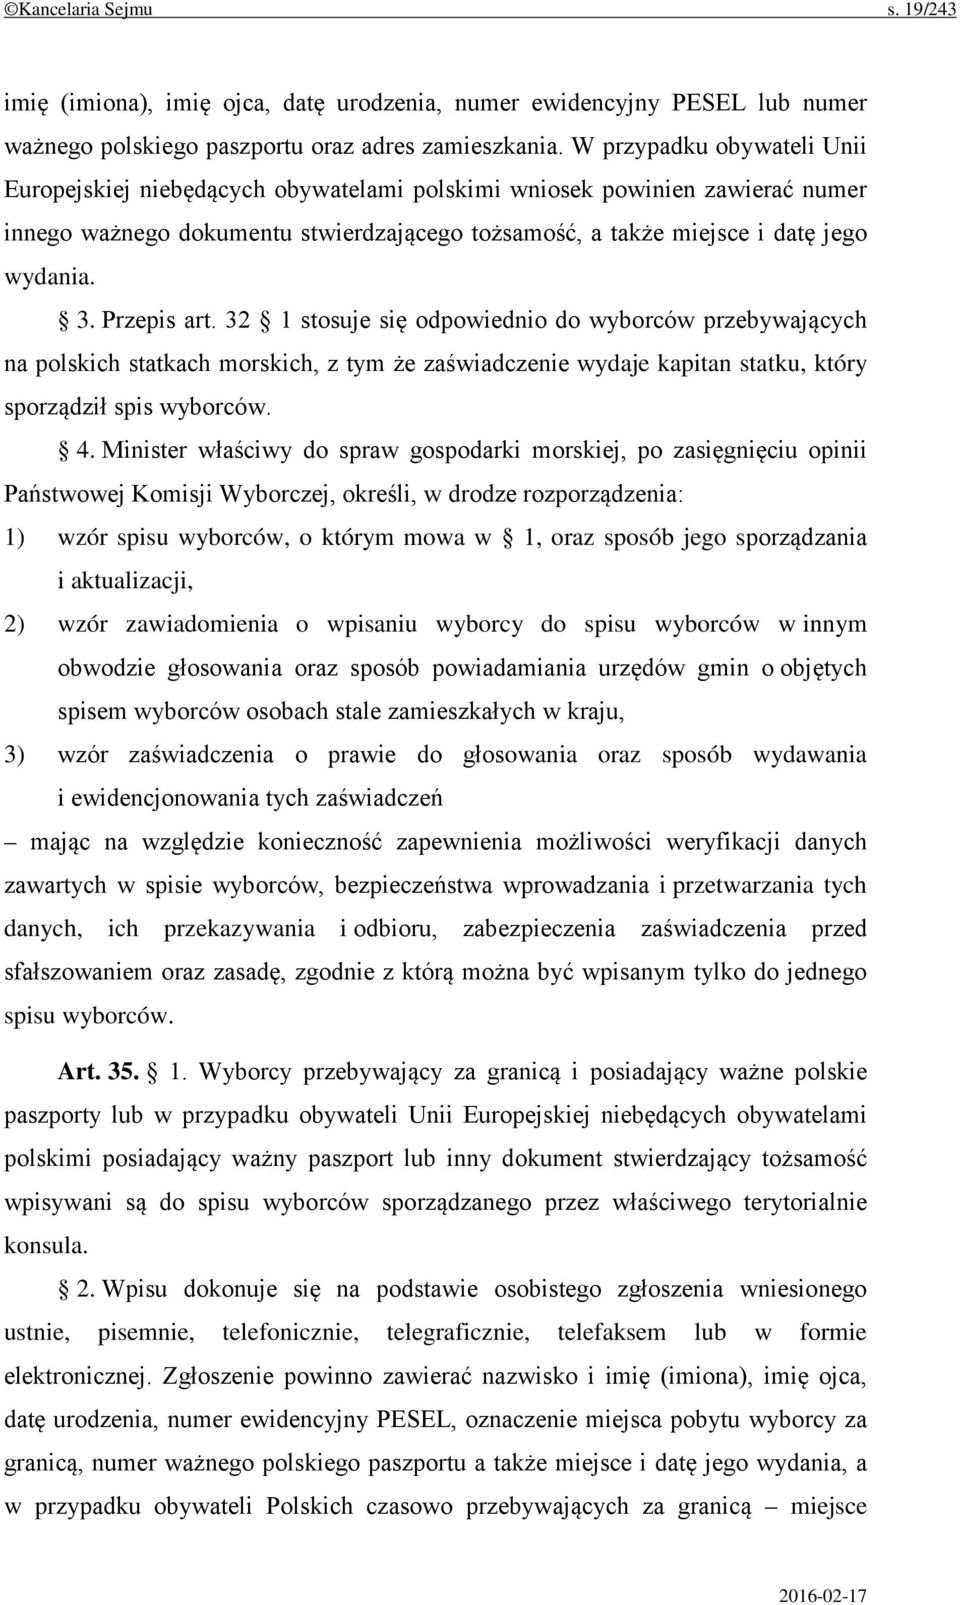 Przepis art. 32 1 stosuje się odpowiednio do wyborców przebywających na polskich statkach morskich, z tym że zaświadczenie wydaje kapitan statku, który sporządził spis wyborców. 4.